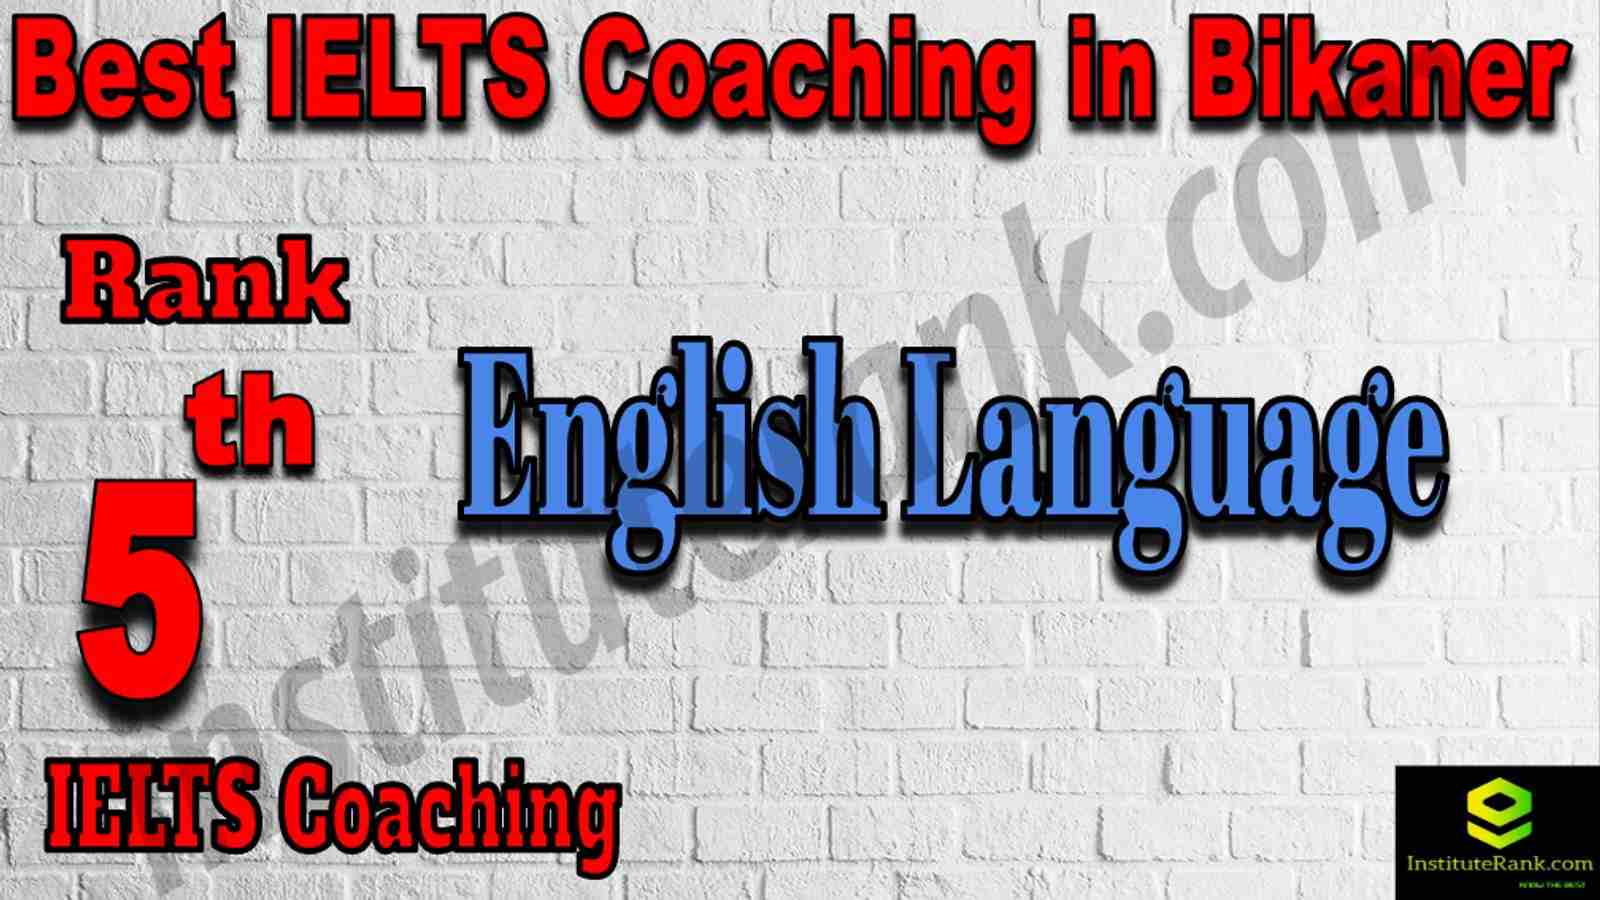 5th Best IELTS Coaching in Bikaner